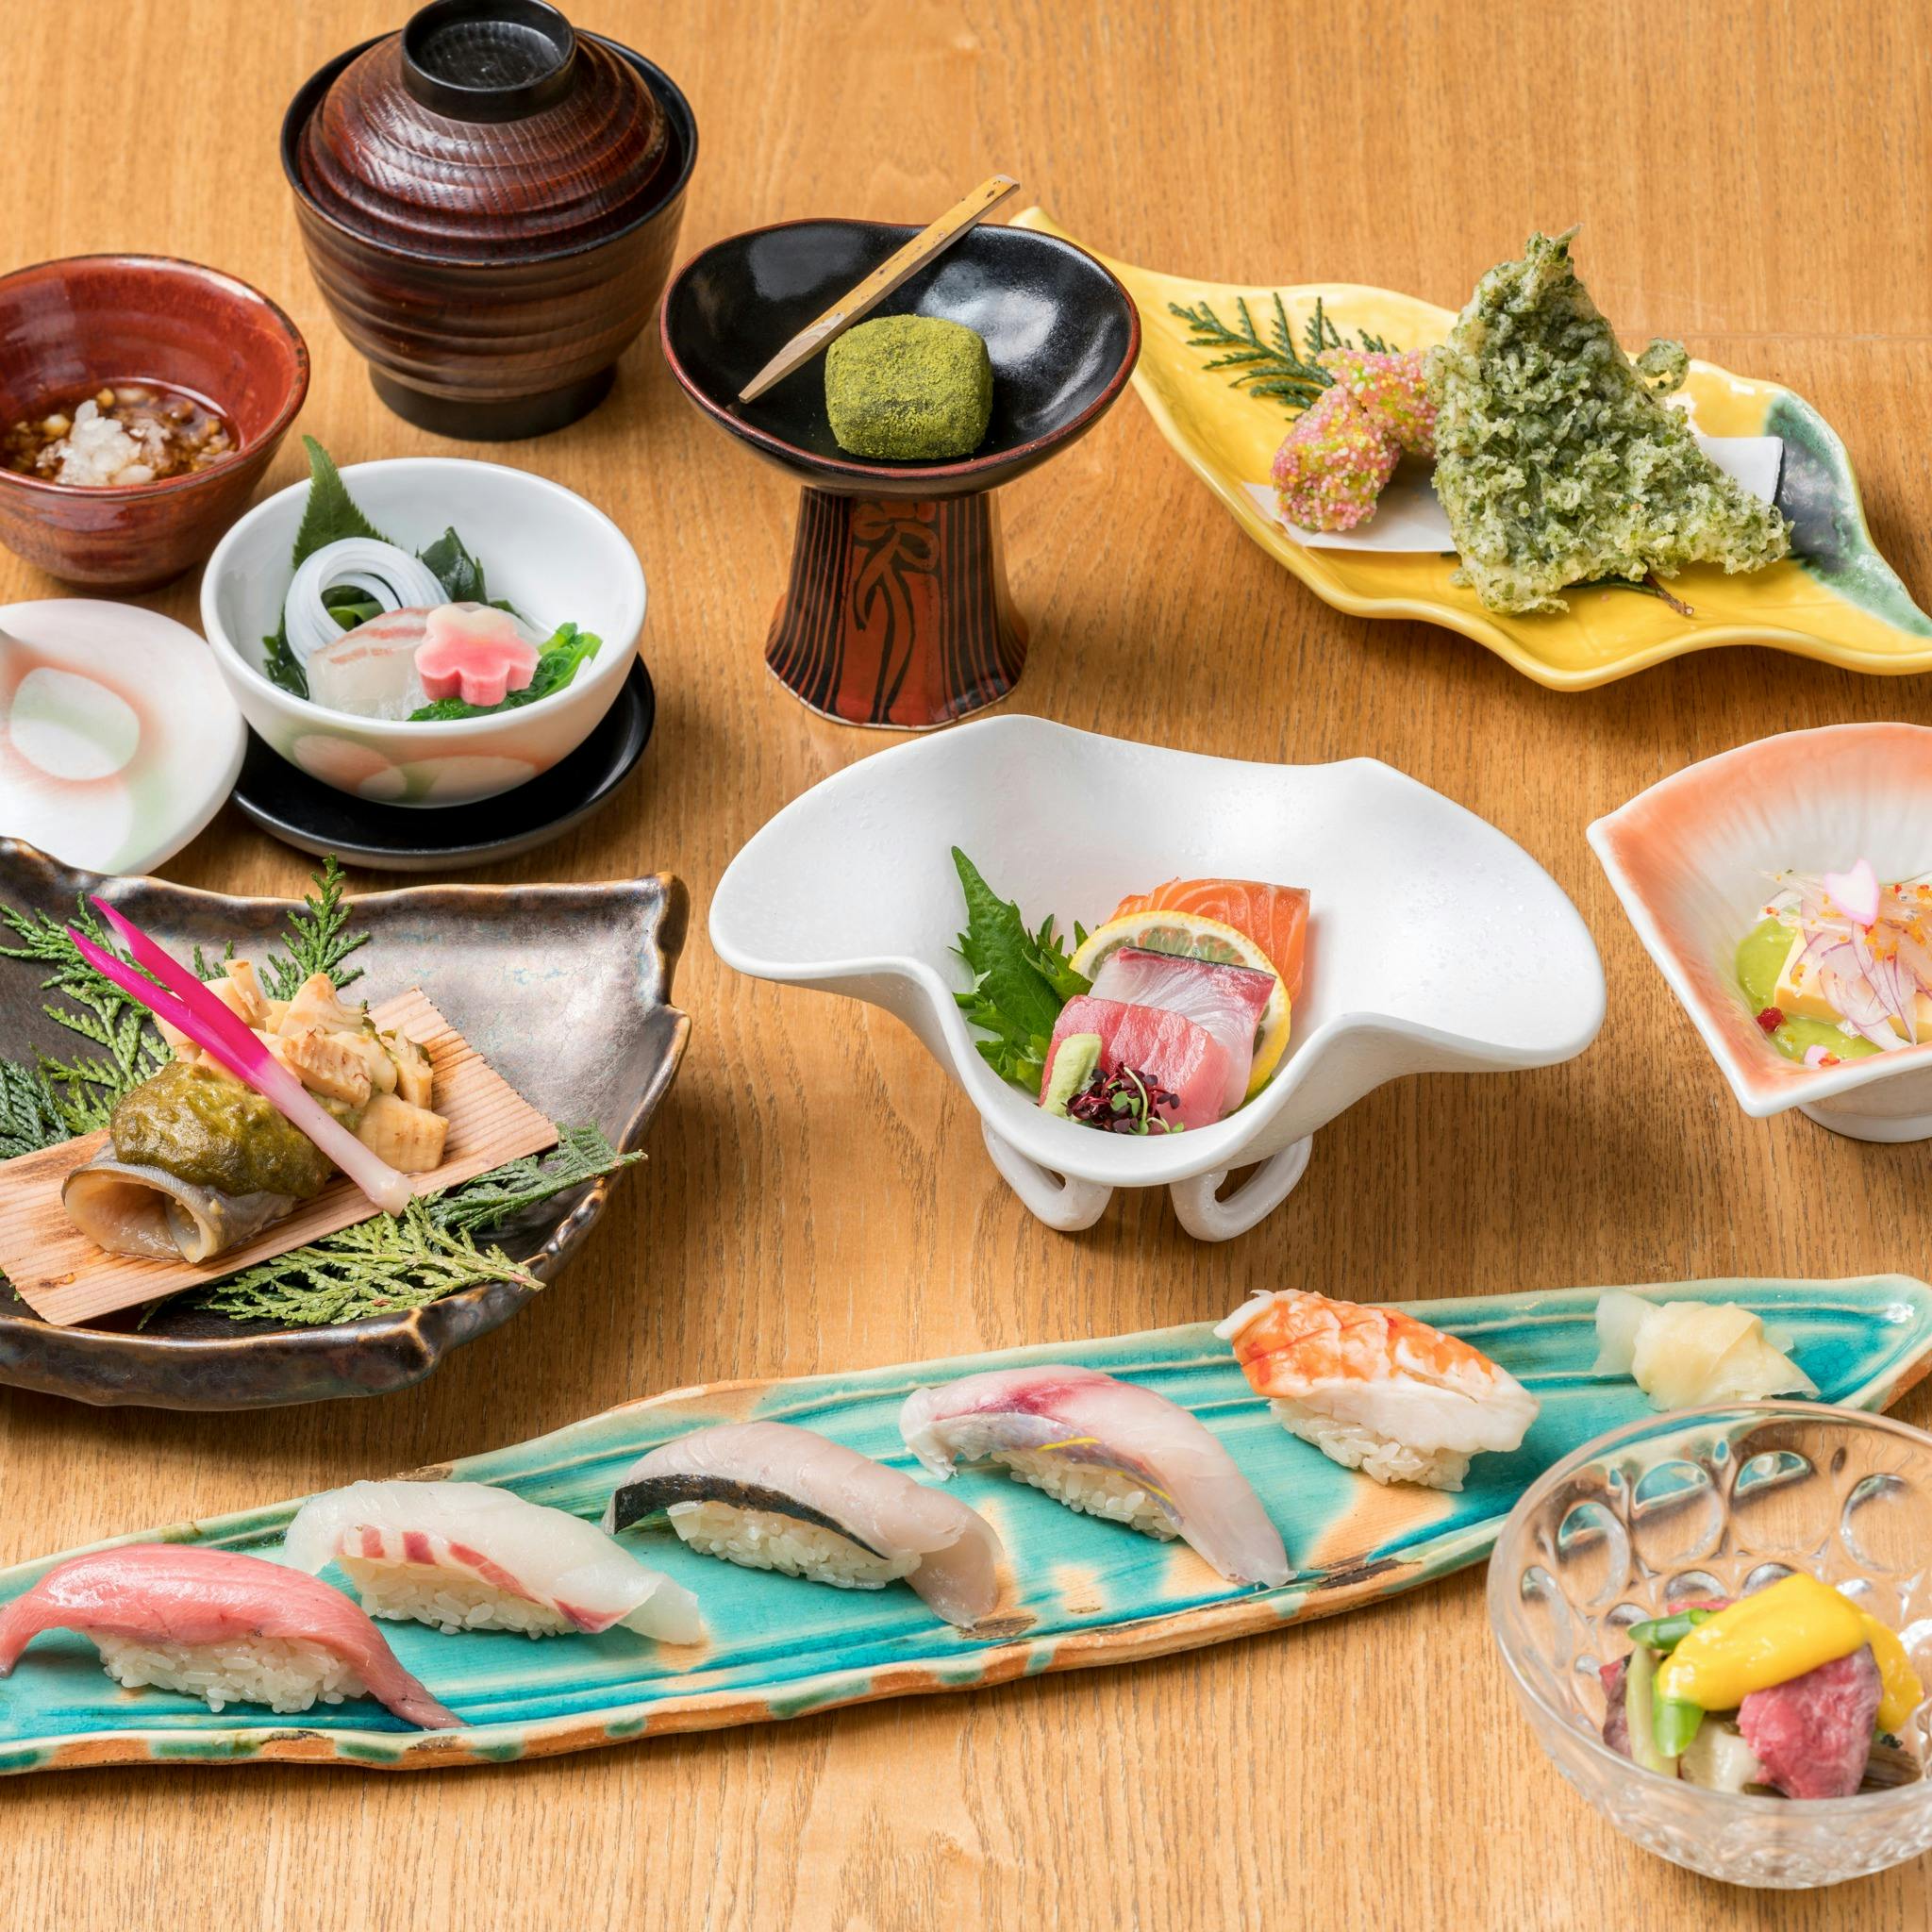 Sushi Sake いぶき 東京駅 Tekko Avenue 欅 旬の鮮魚や素材の和食を堪能いただける全9品 スパークリング含む3時間飲み放題 ディナー プラン 11049719 メニュー 一休 Comレストラン